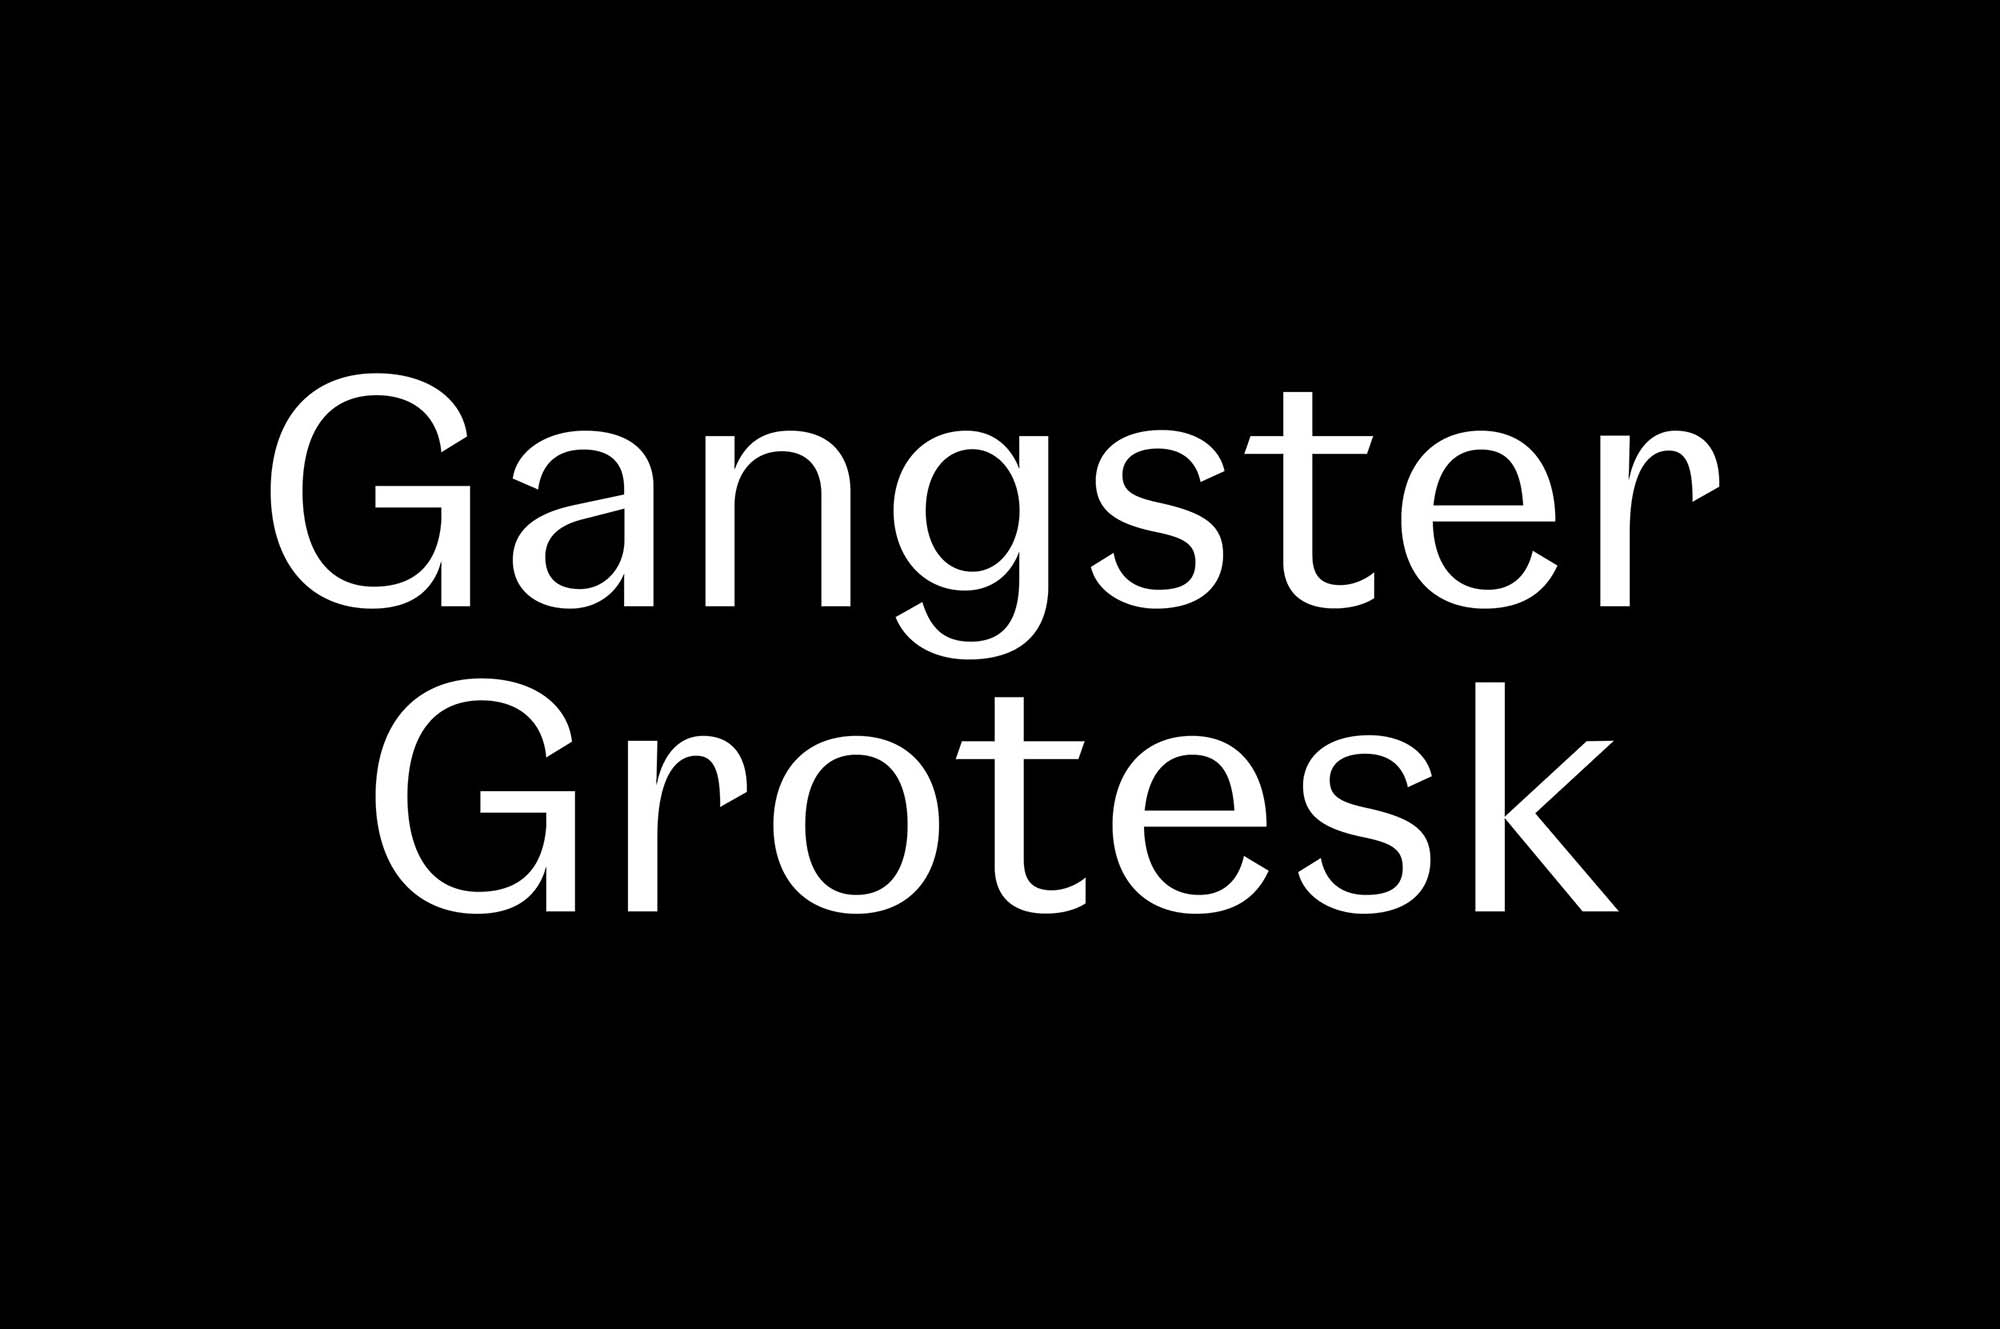 Gangster Grotesk Typeface Font